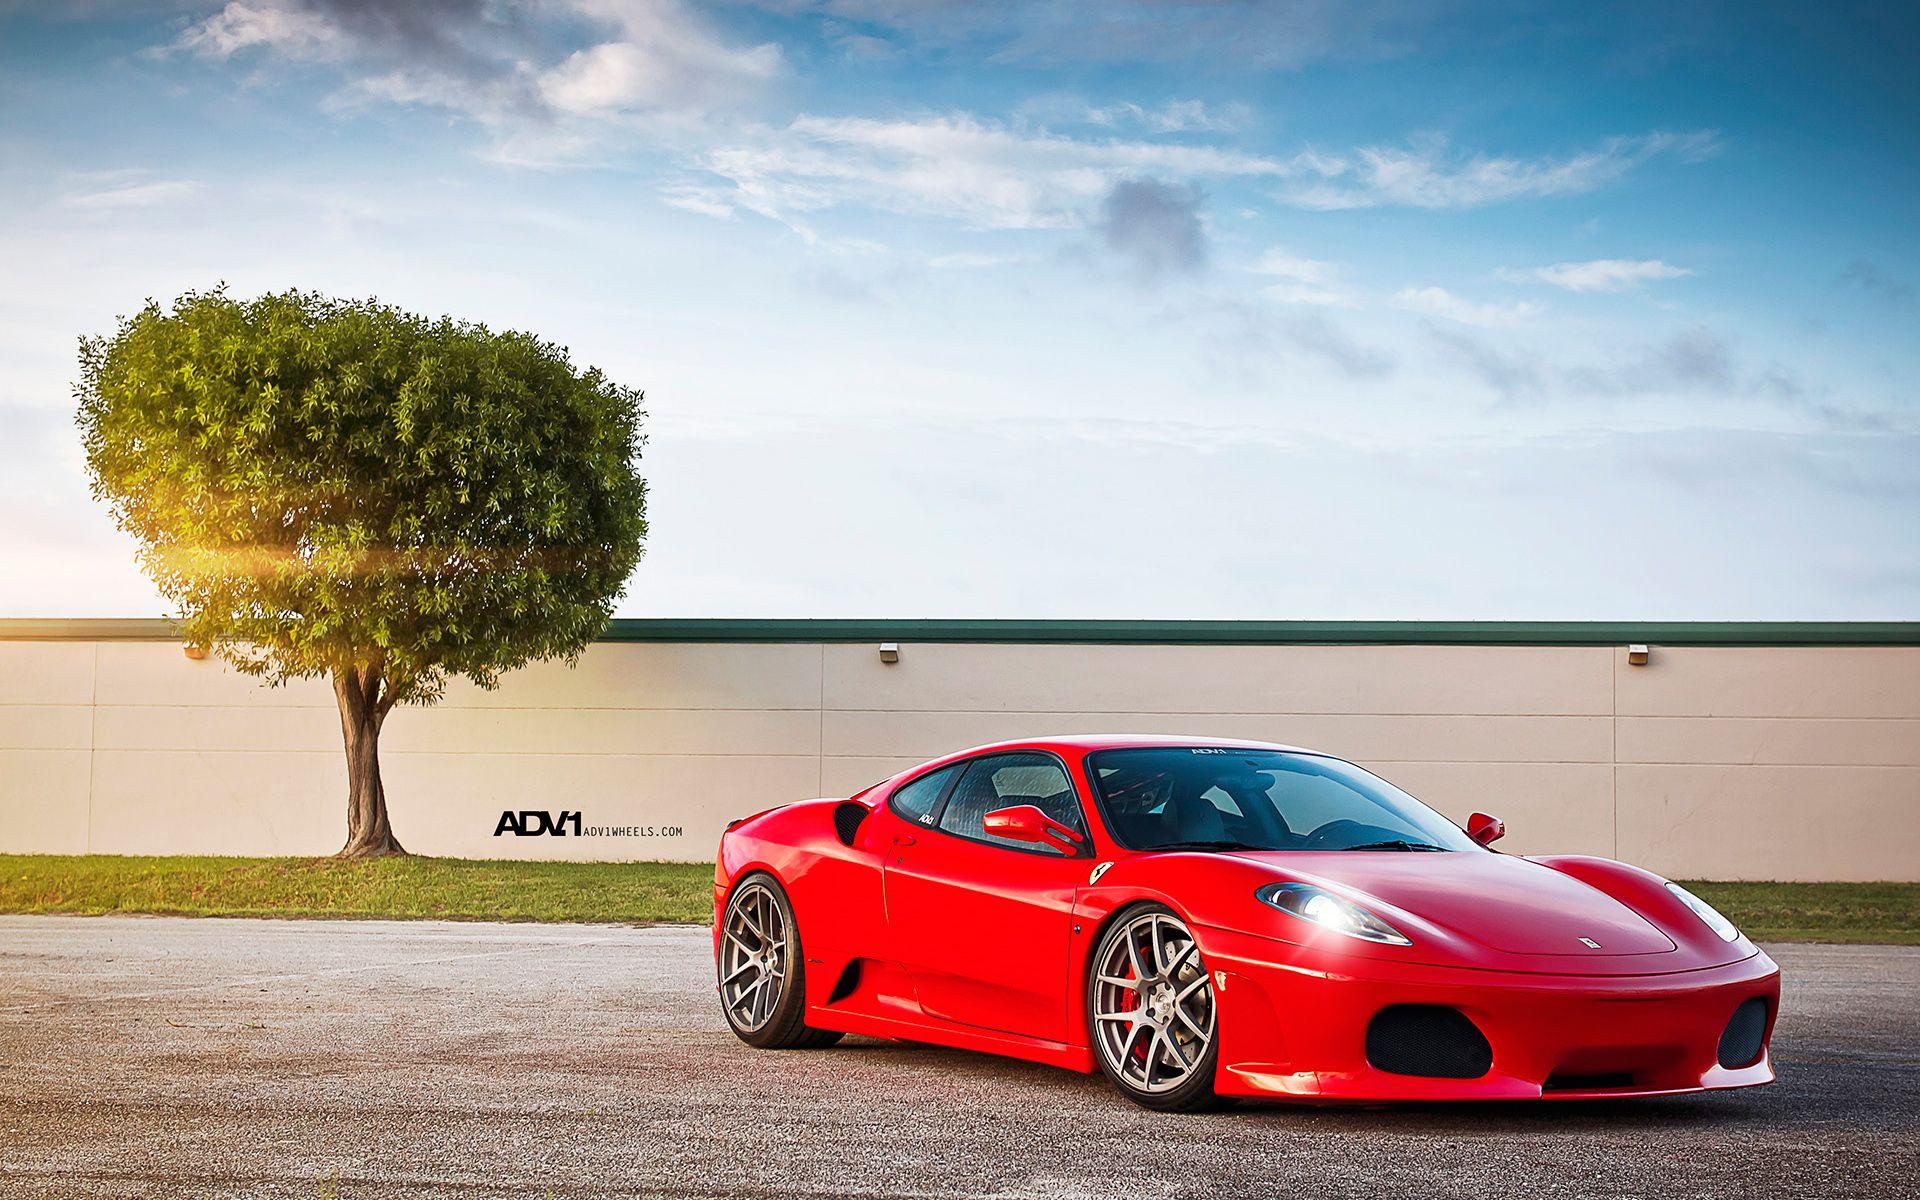 Ferrari F430 by ADV1 Wallpaper. HD Car Wallpaper